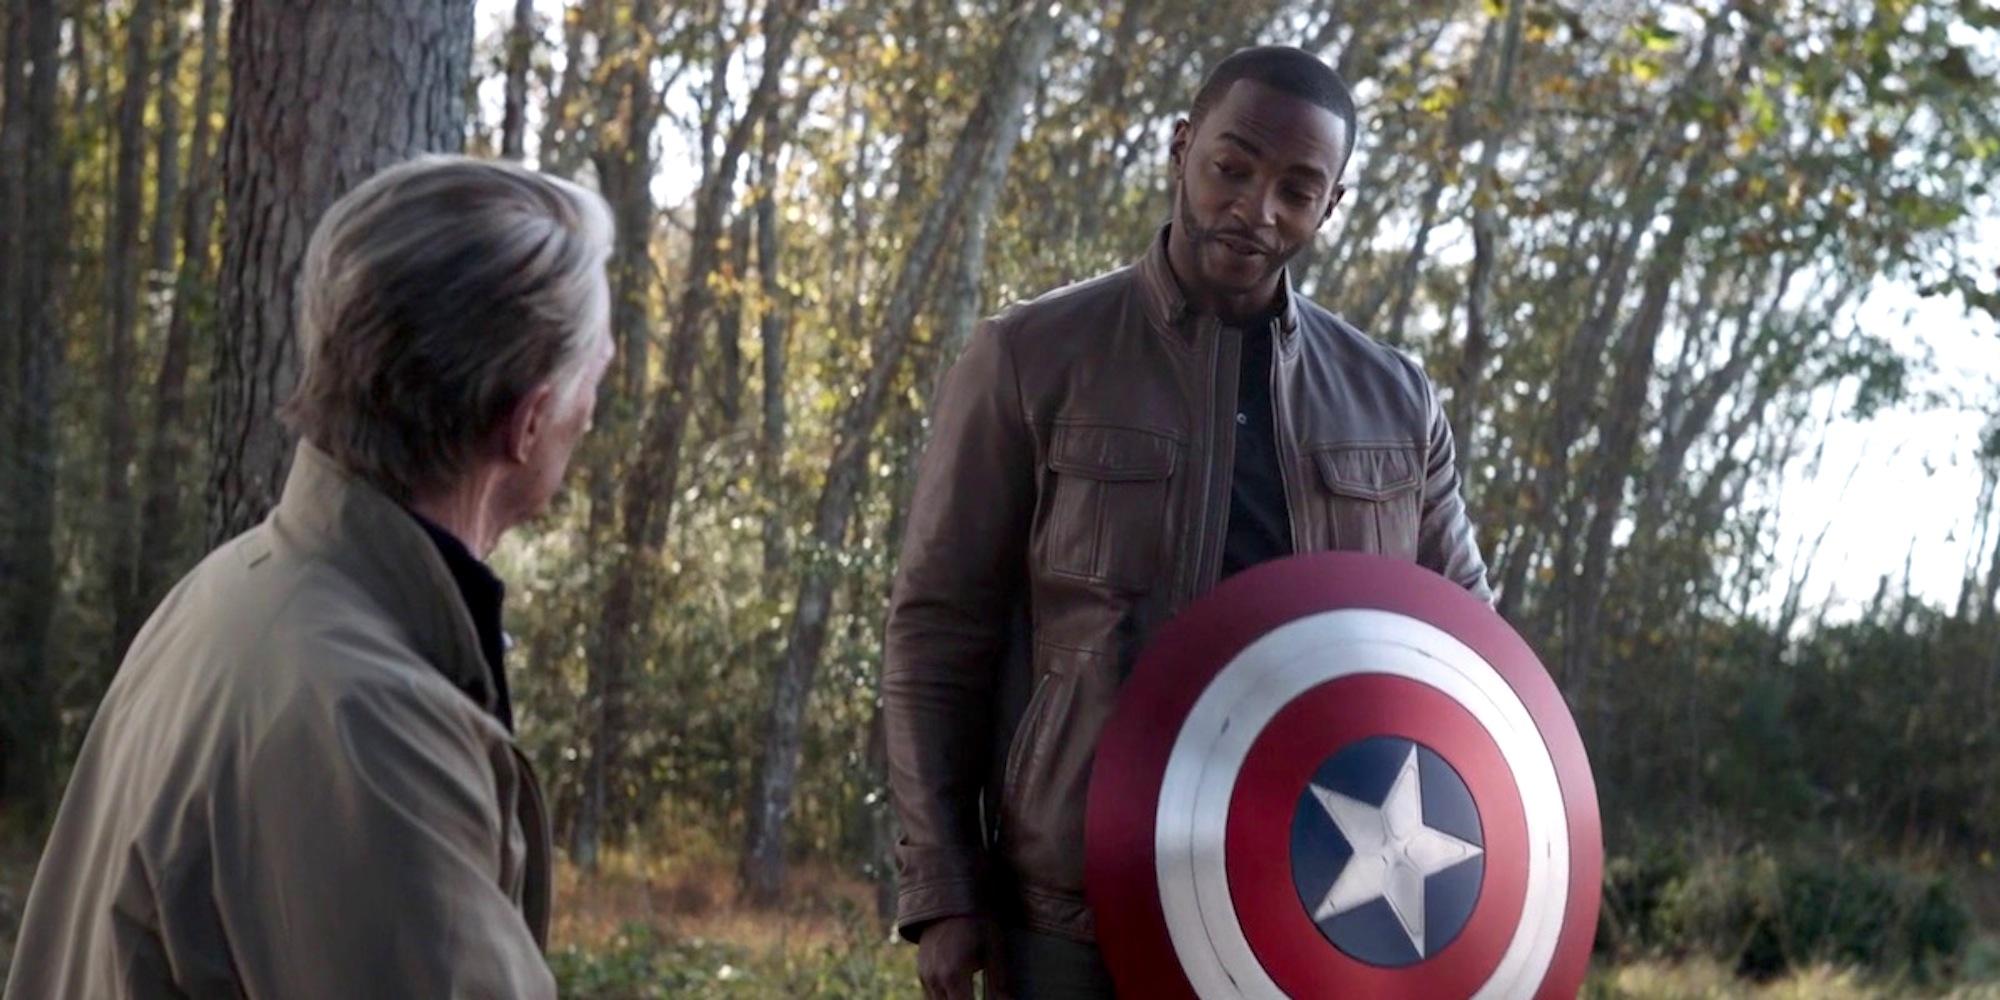 Steve Rogers made Sam Wilson the new Captain America in Avengers: Endgame.